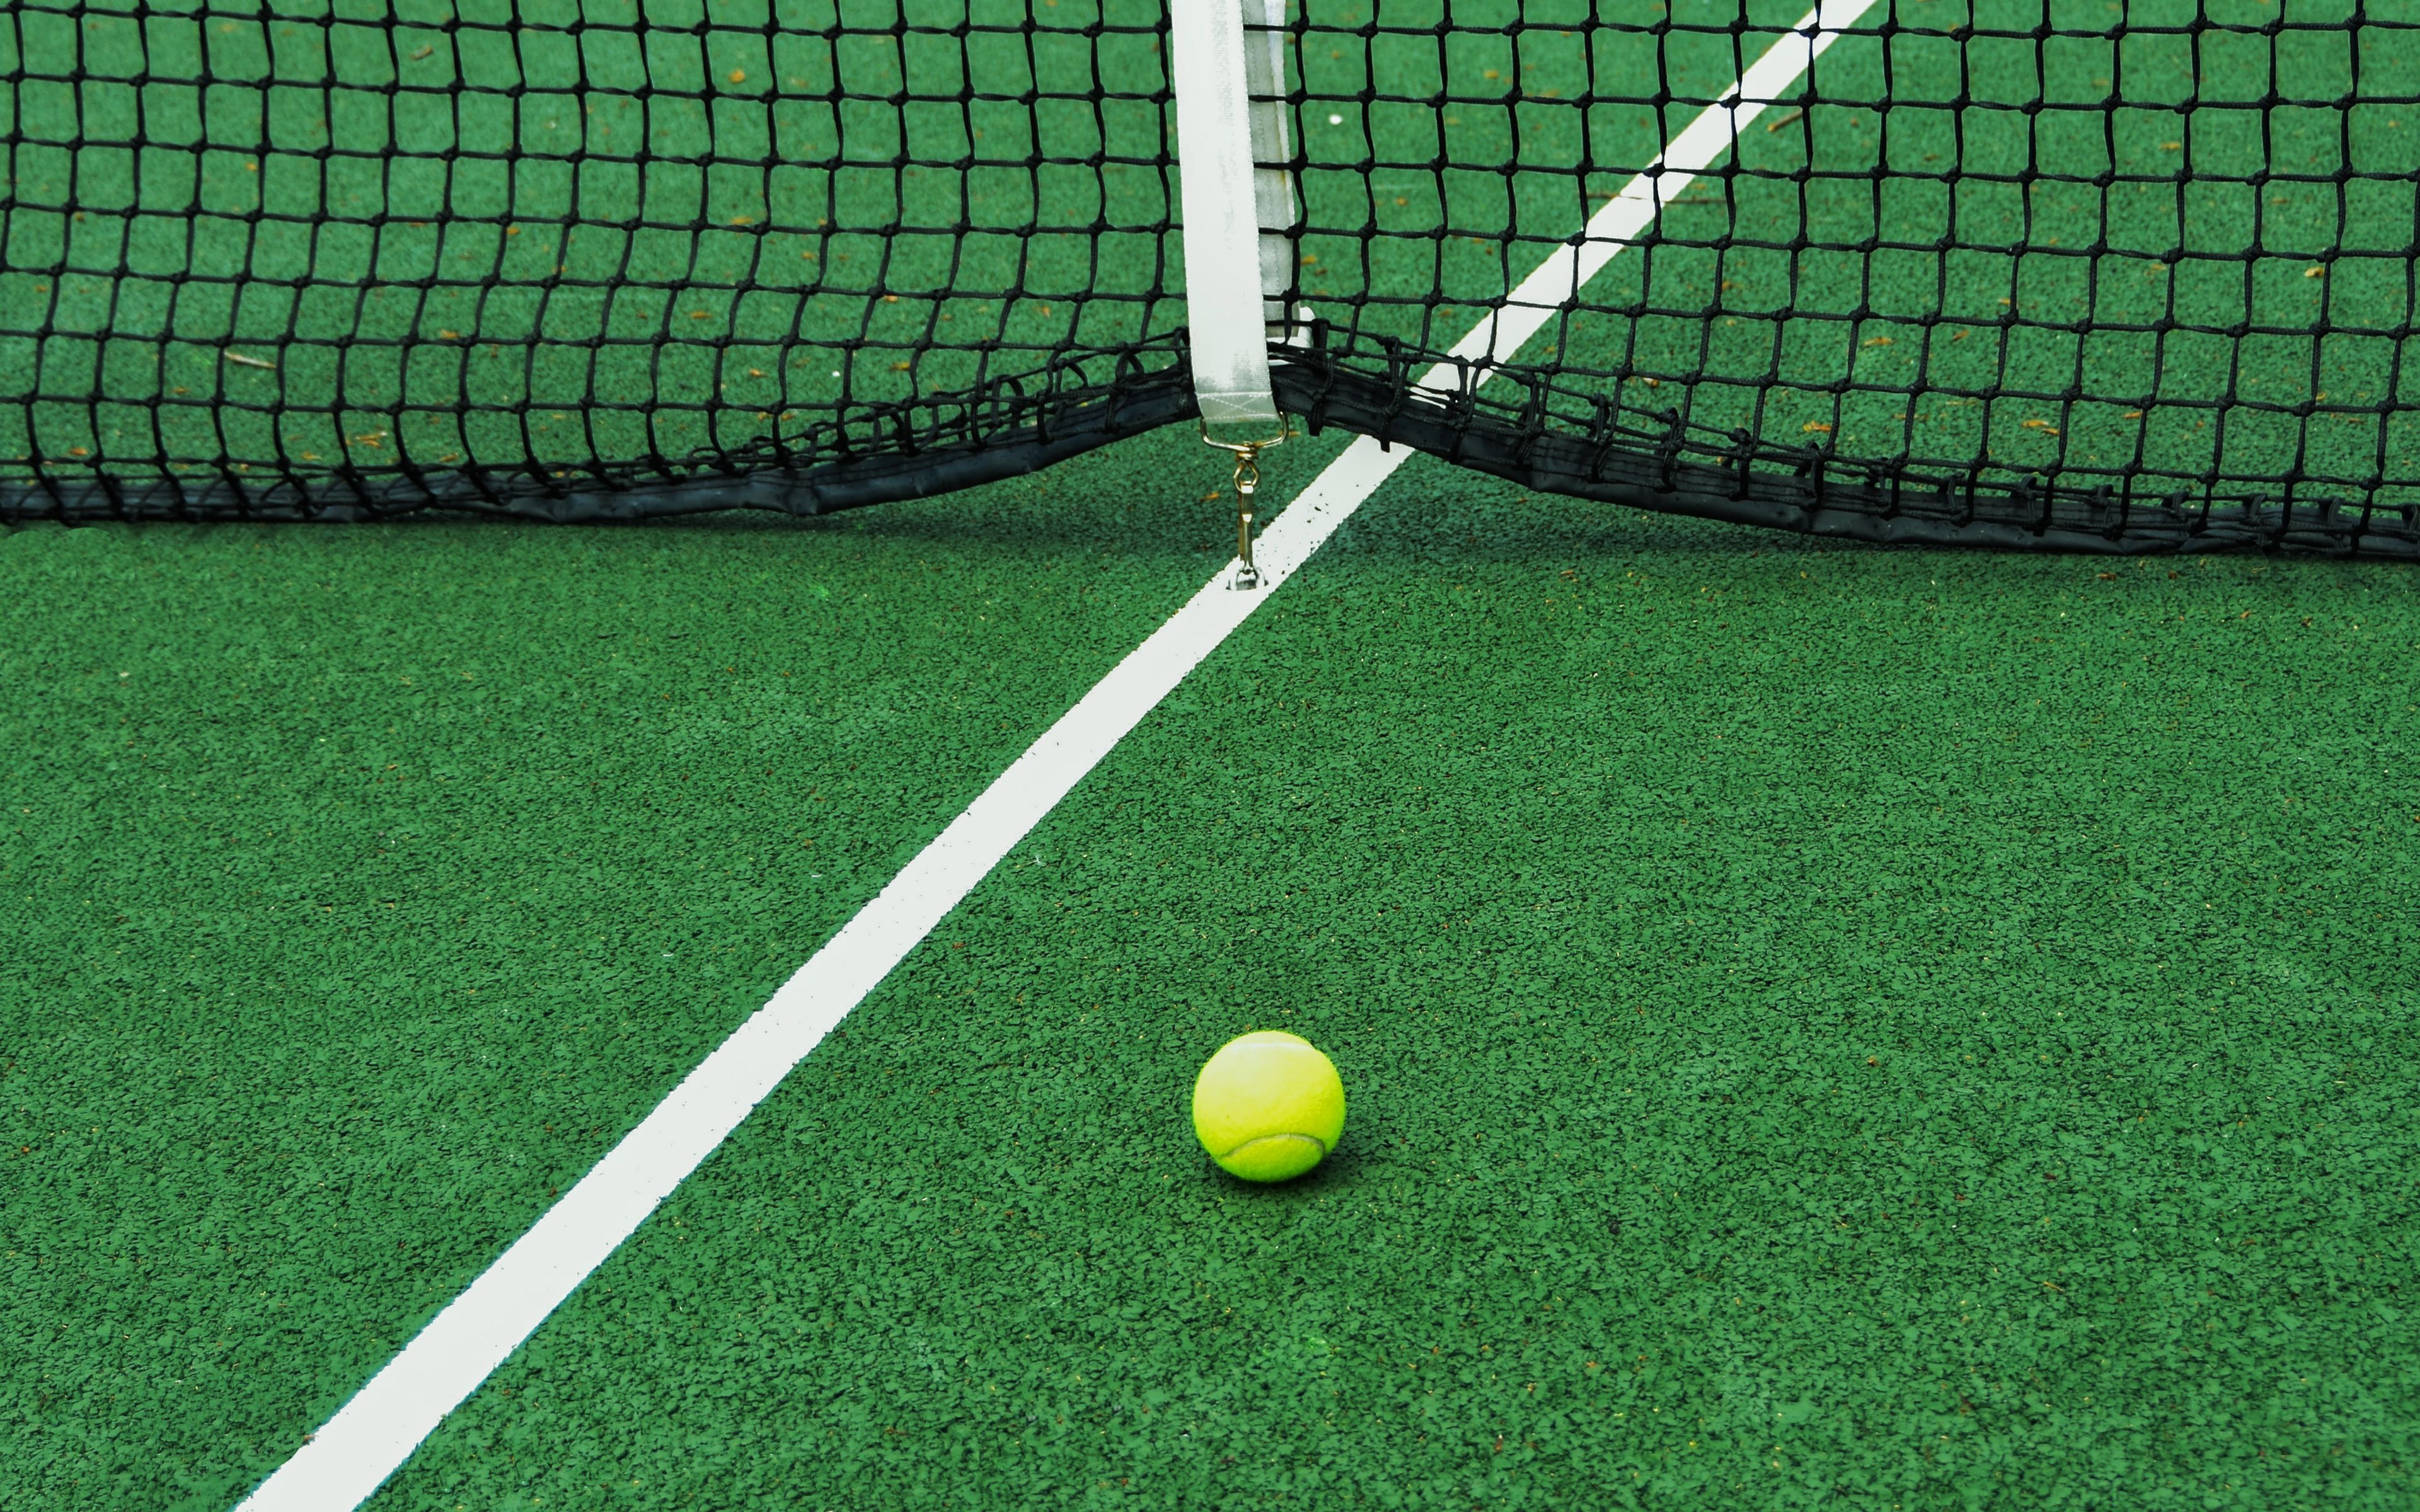 Download wallpaper 3840x2400 tennis, court, net, ball, sport 4k ultra hd  16:10 hd background